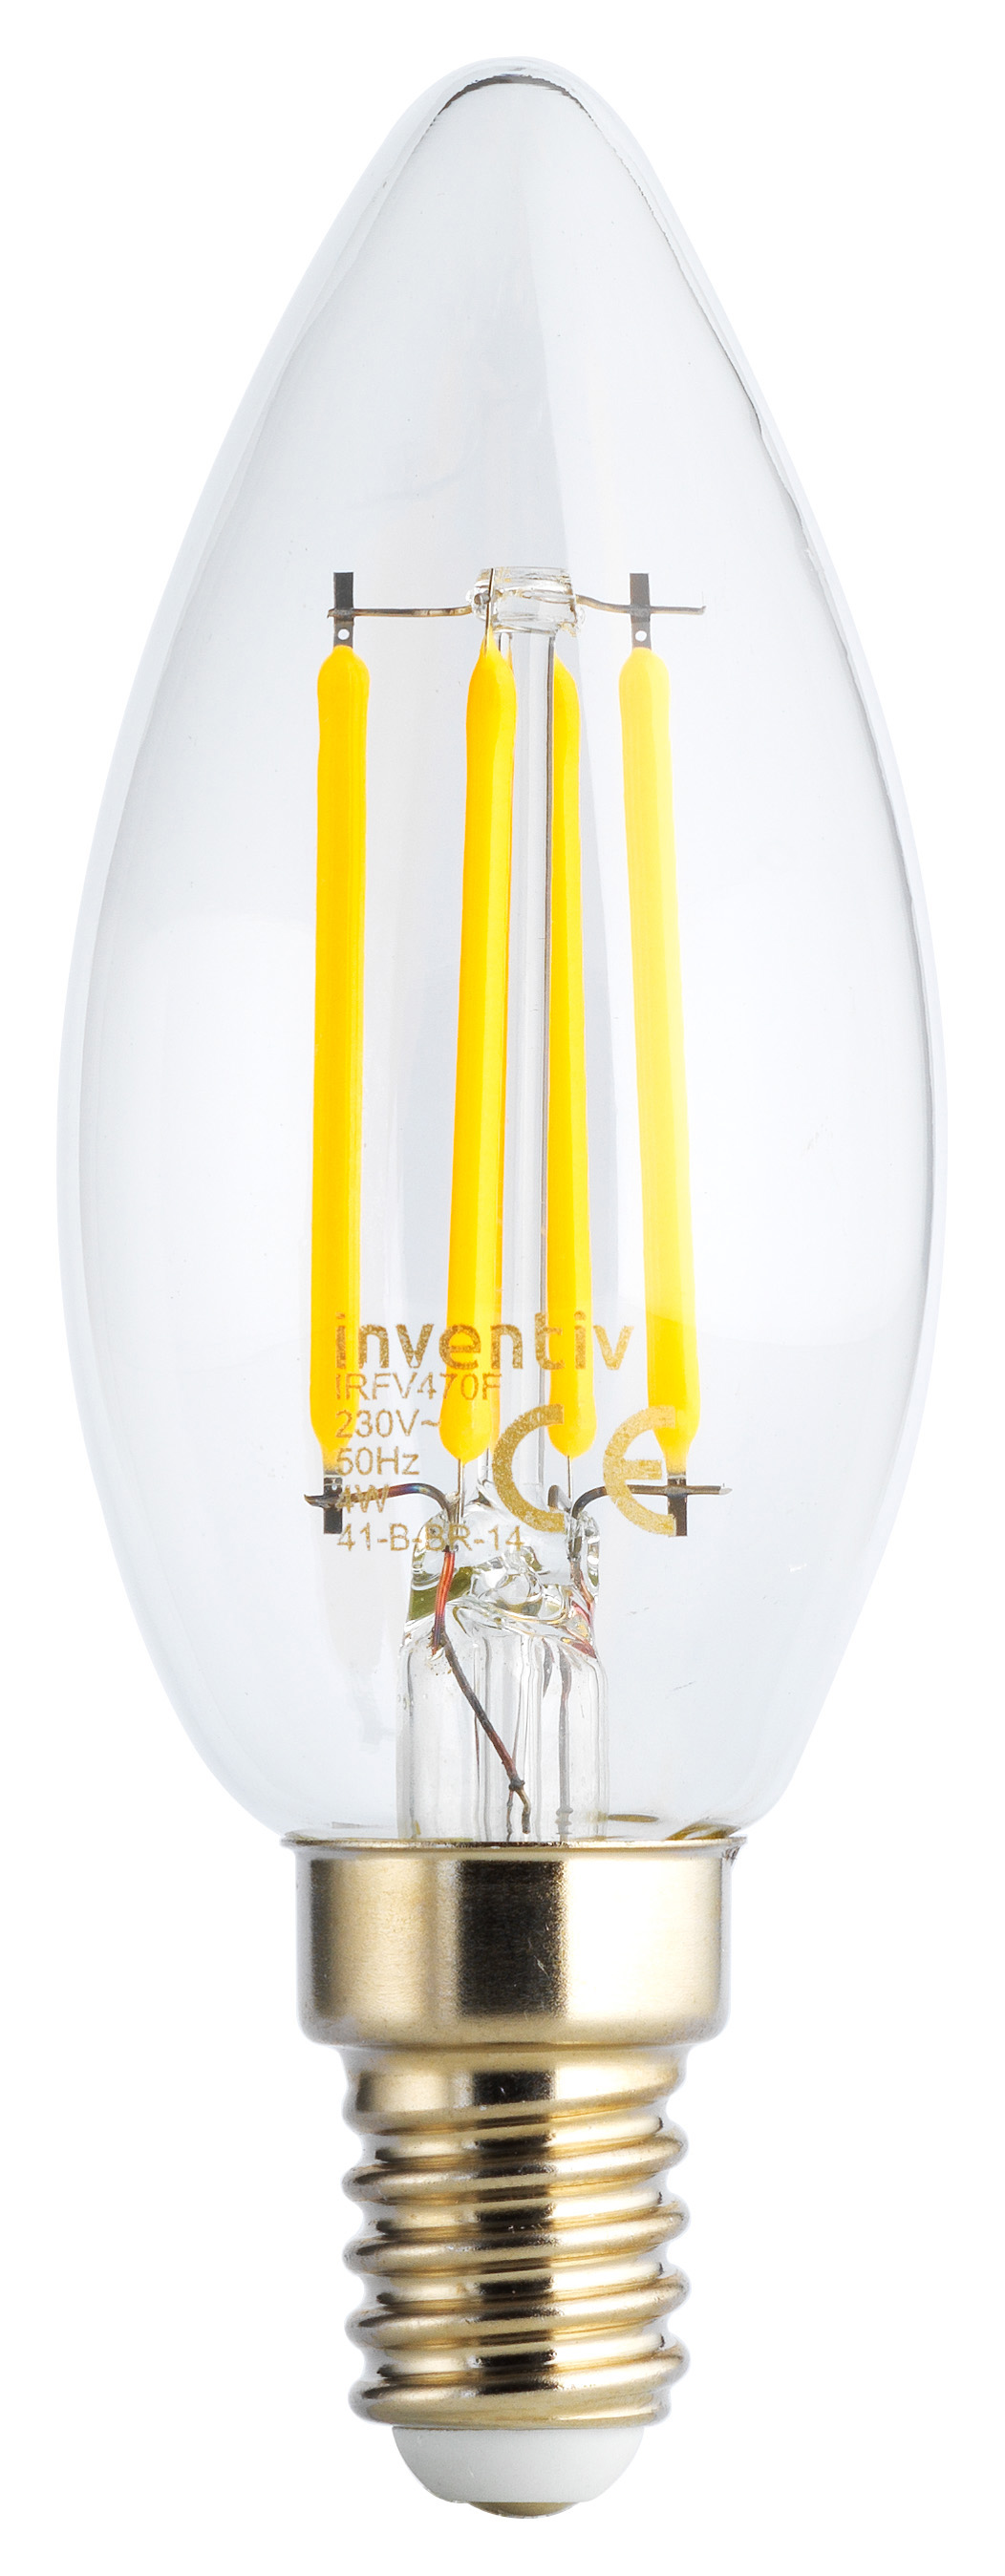 Ampoule Retroled flamme transparent E14 5W blanc neutre - INVENTIV